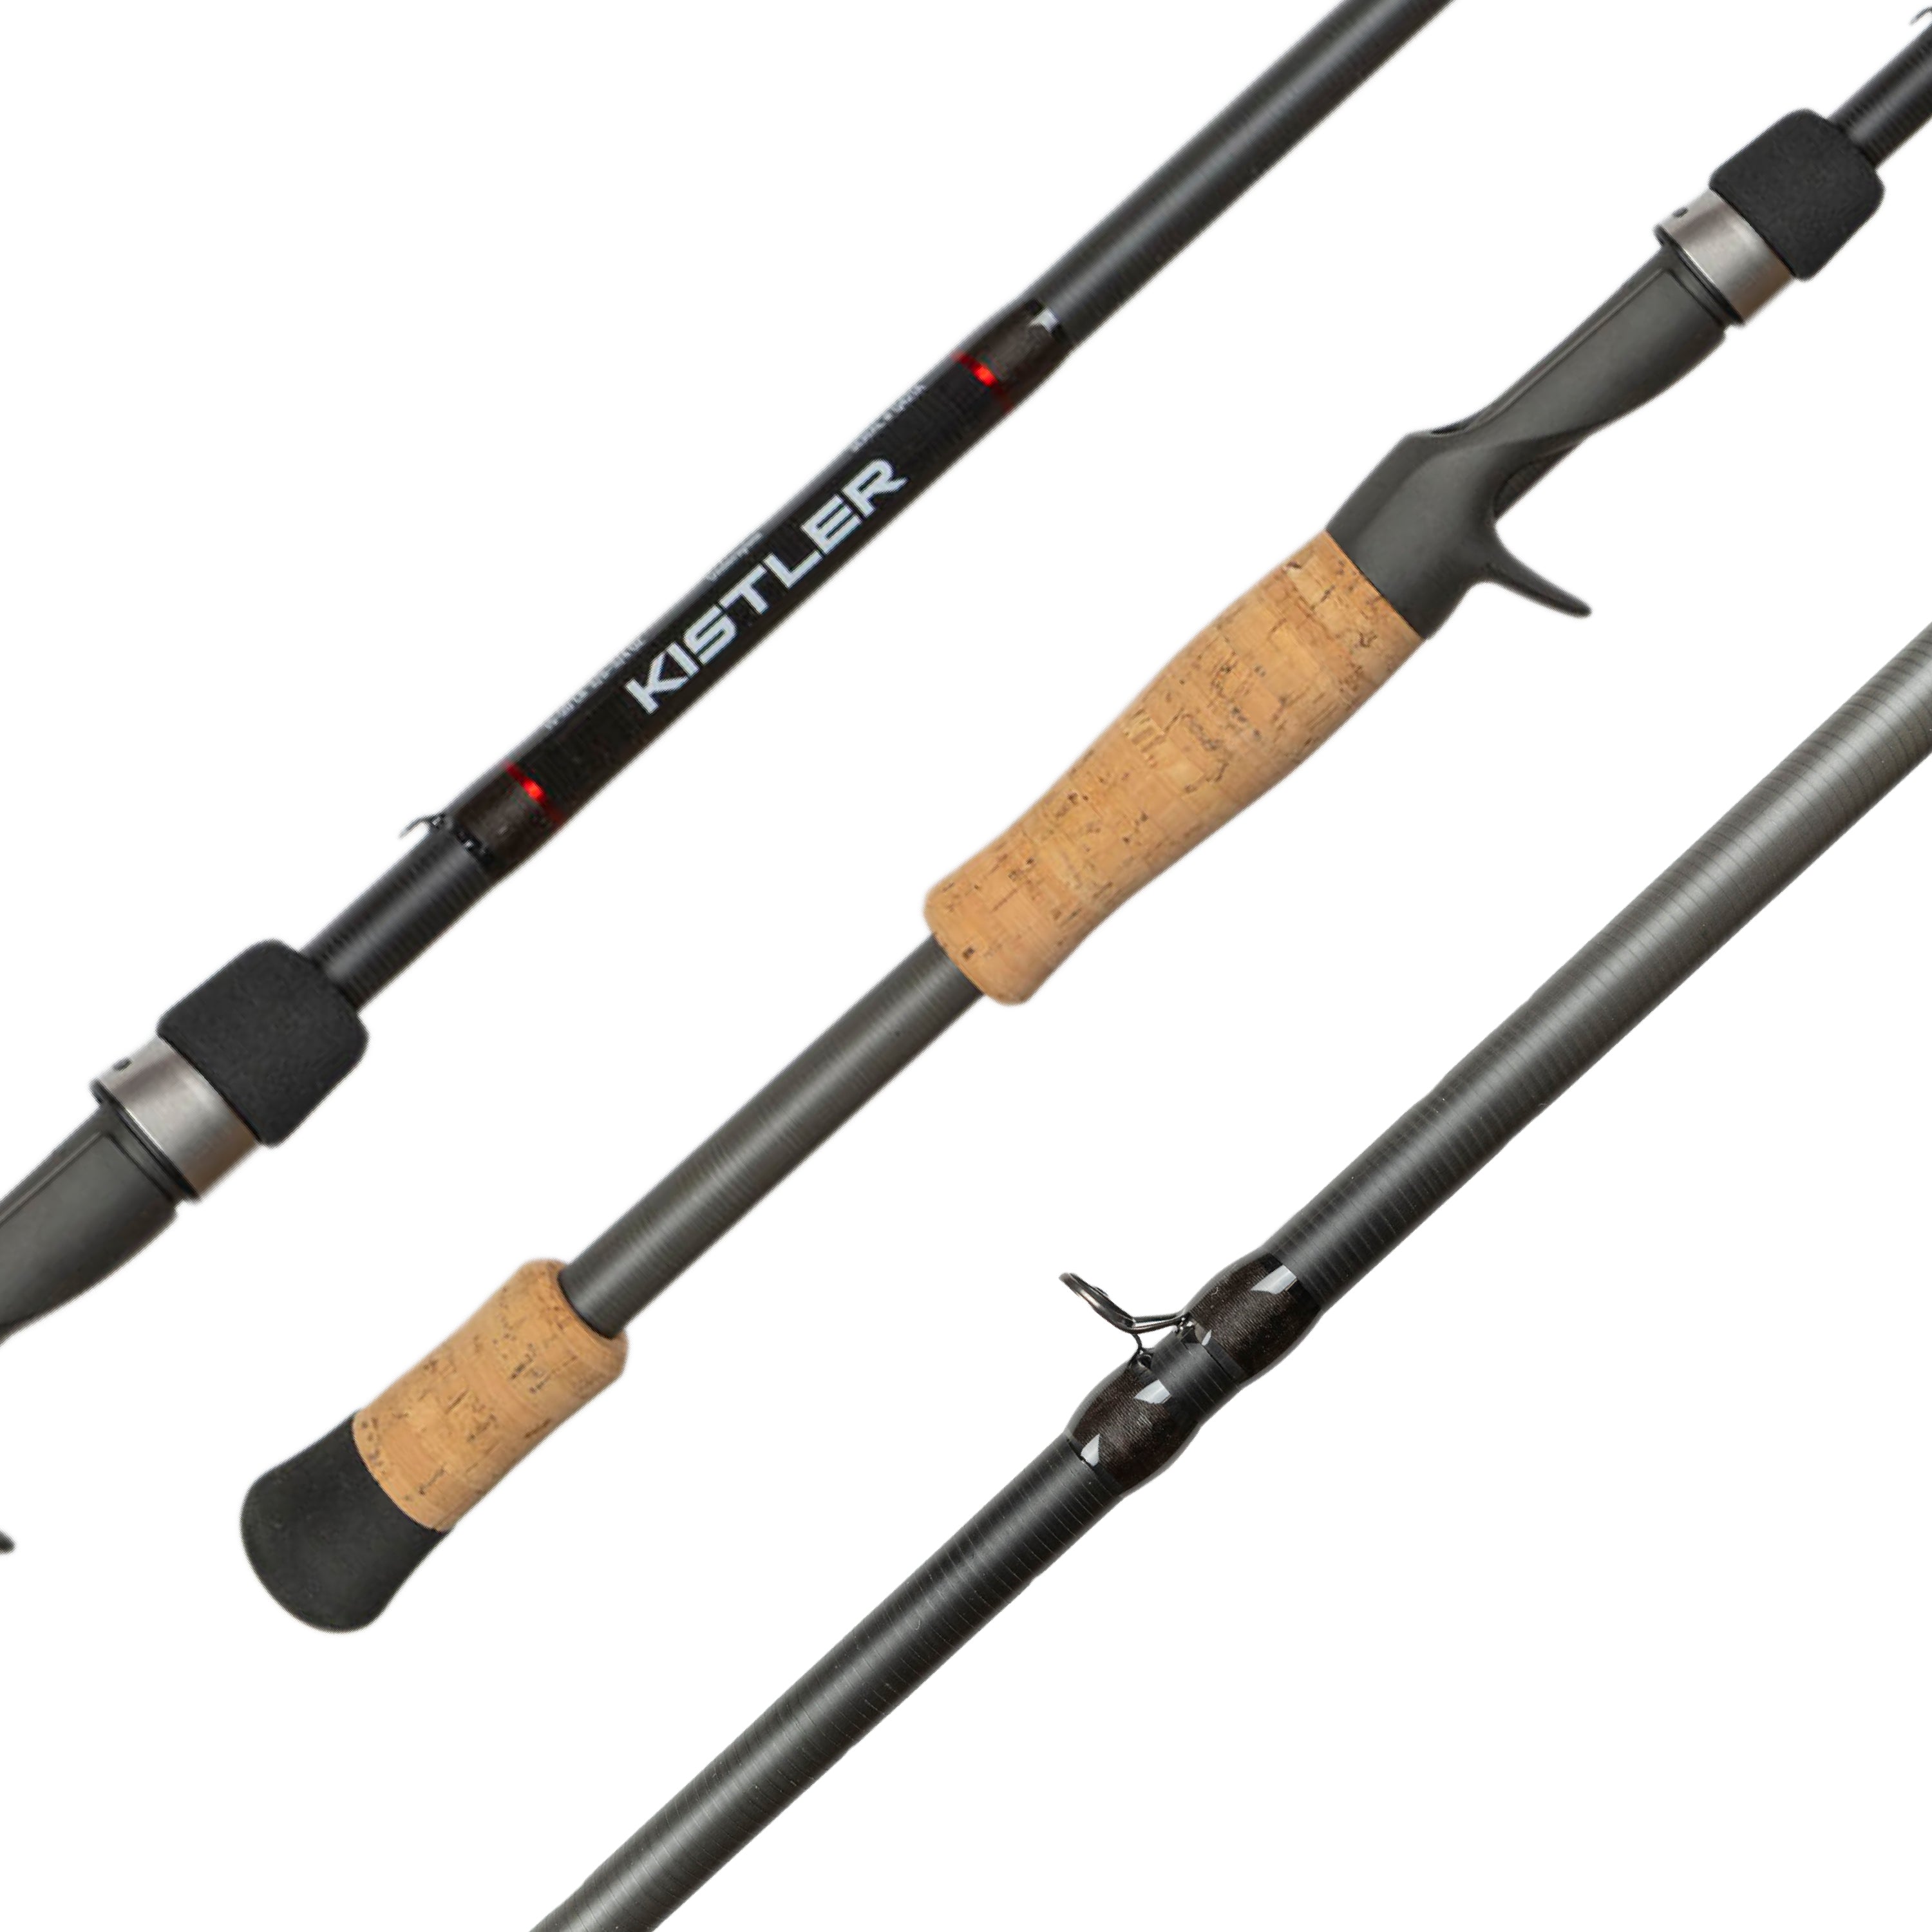 KLX Spinnerbait, Chatterbaits, Underspins Casting Rods – KISTLER Fishing